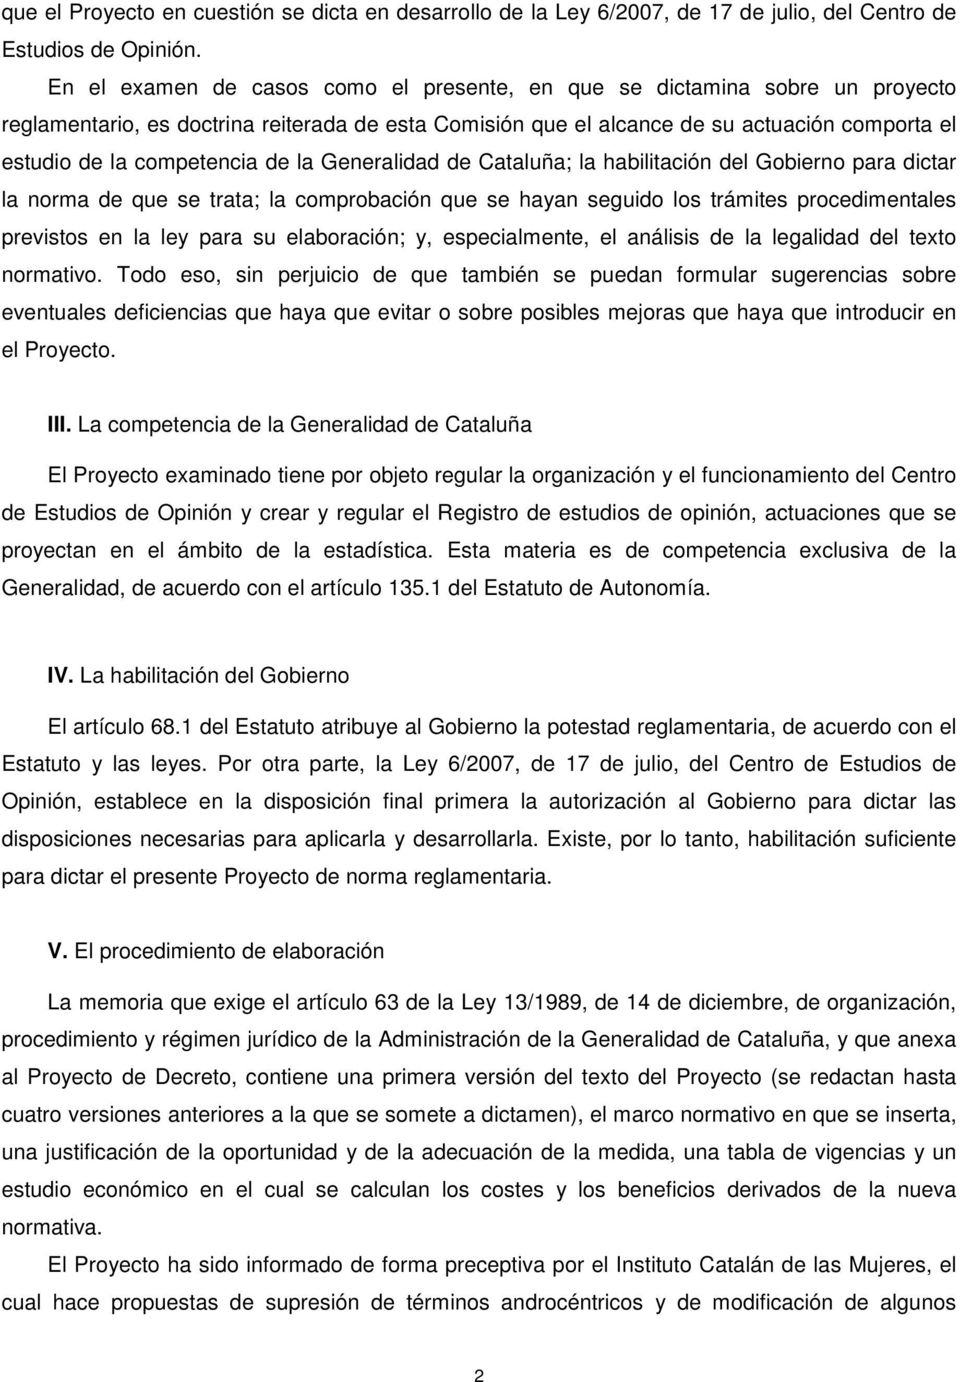 competencia de la Generalidad de Cataluña; la habilitación del Gobierno para dictar la norma de que se trata; la comprobación que se hayan seguido los trámites procedimentales previstos en la ley